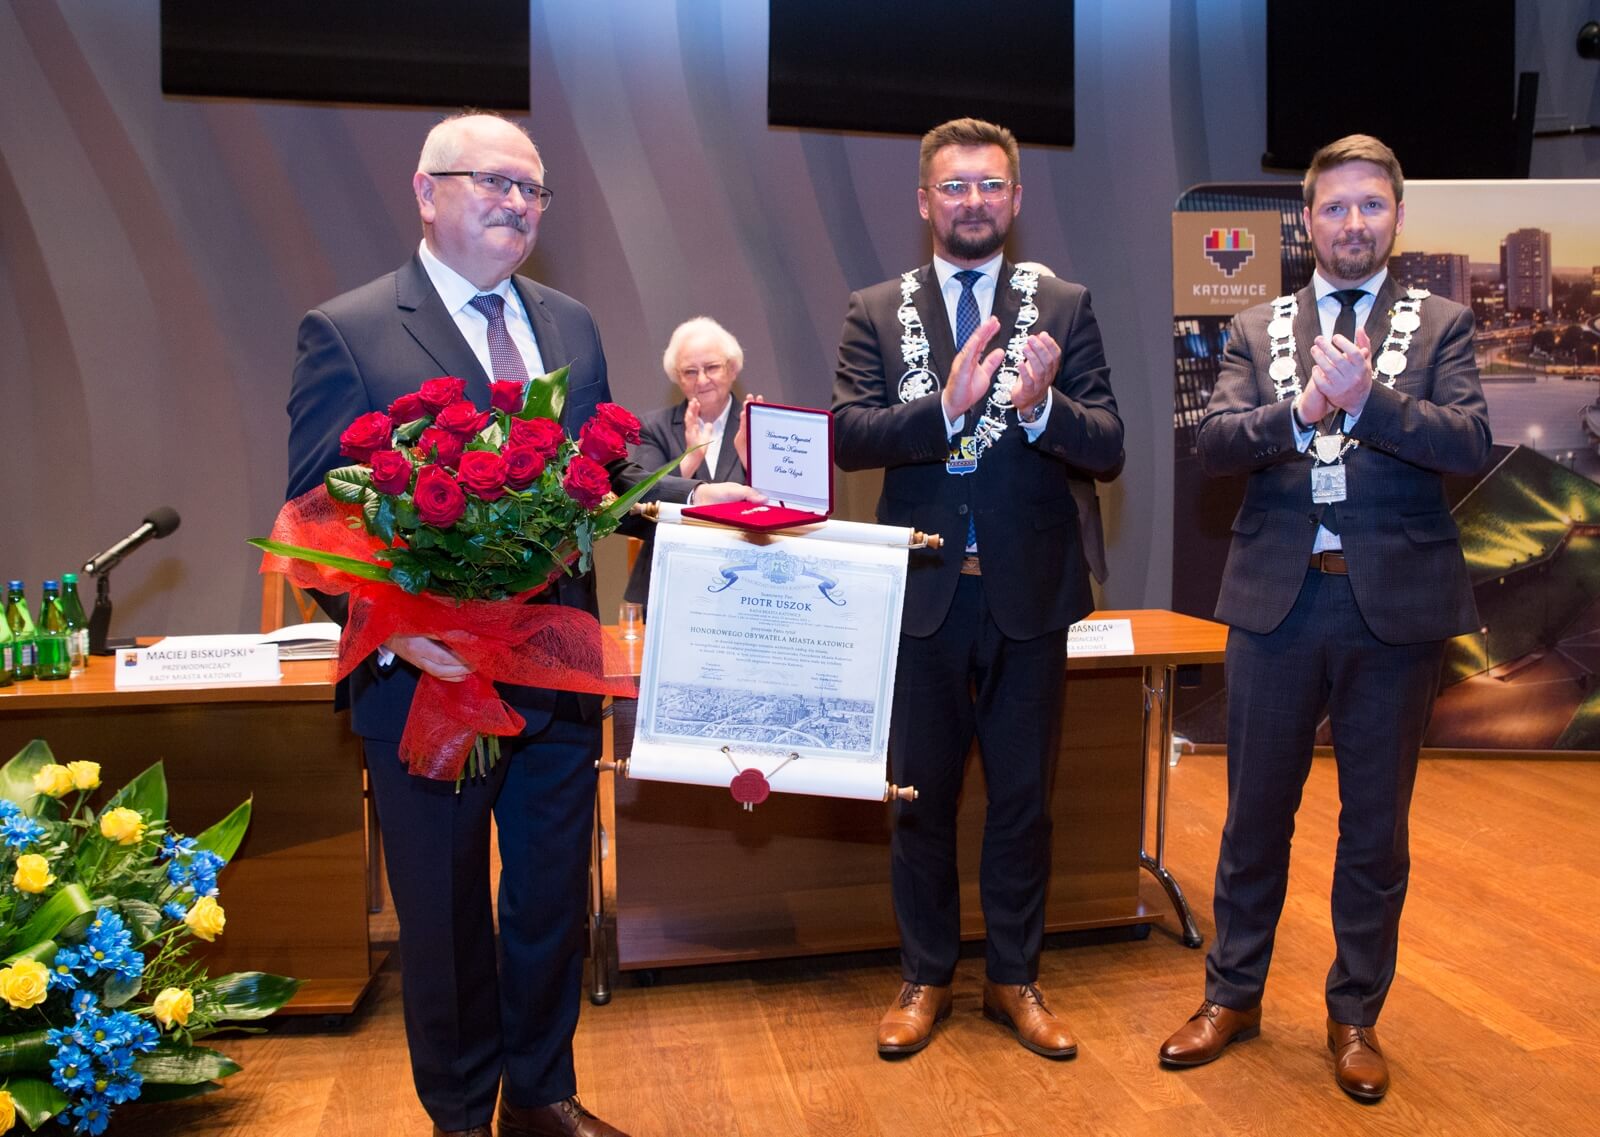 Tytuł Honorowy Obywatel Miasta Katowice otrzymał Piotr Uszok fot Sławomir Rybok